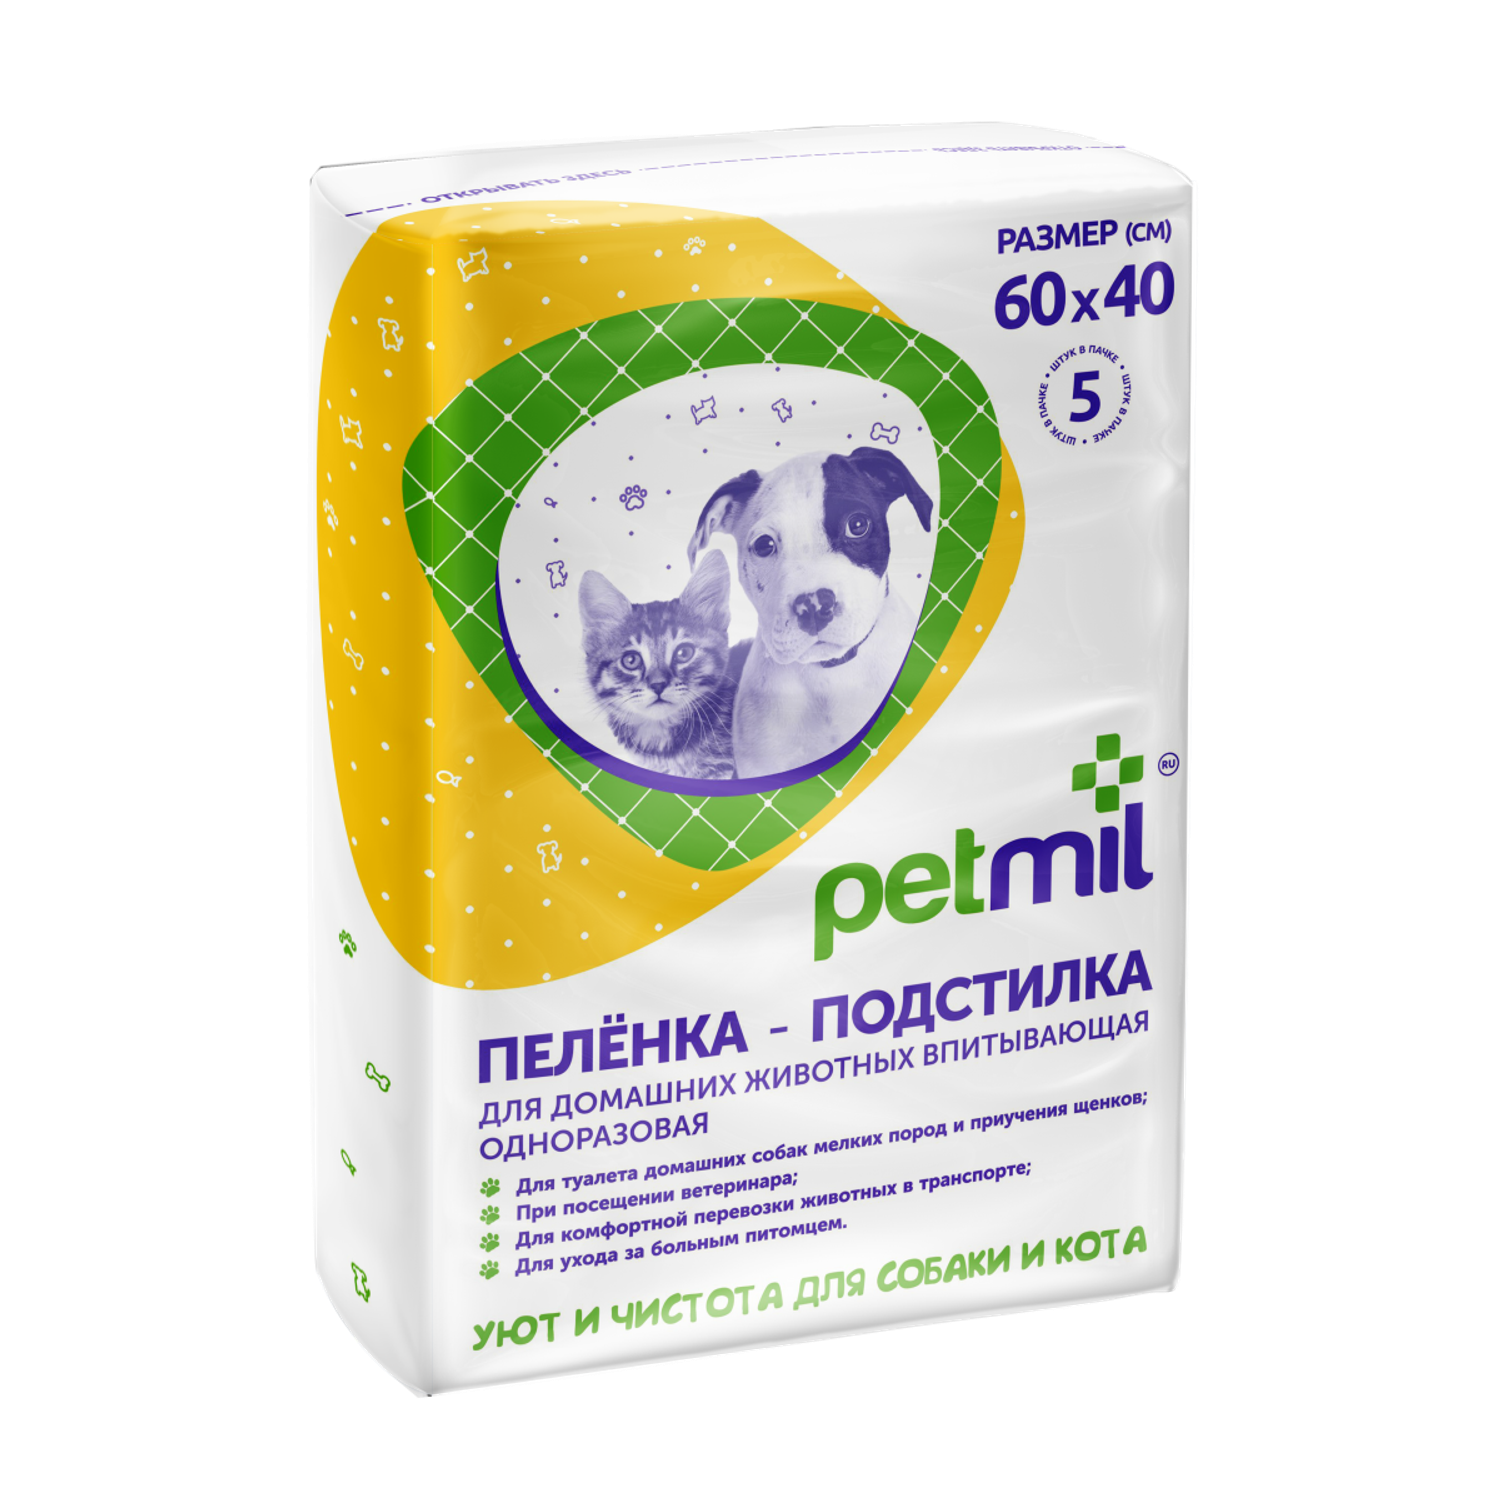 Пеленки для животных PETMIL 60*40 по 5 шт в упаковке - фото 1